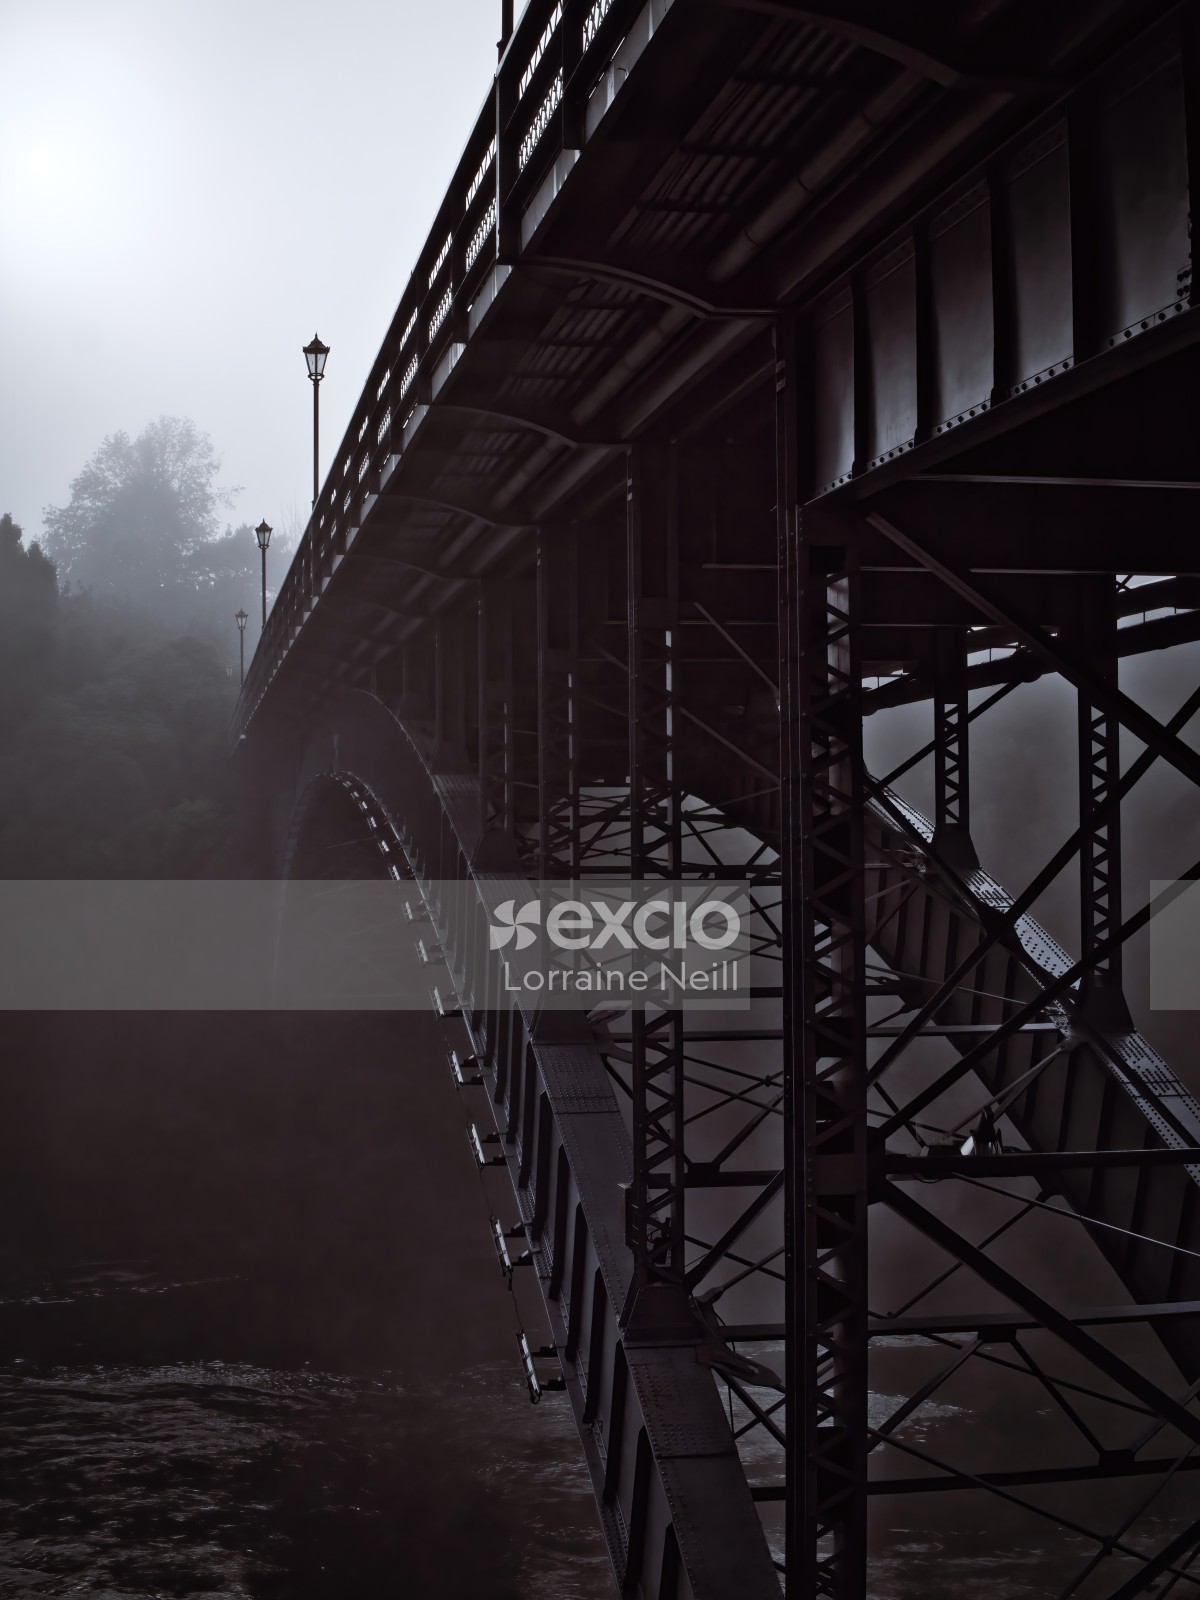 Bridge in the Fog